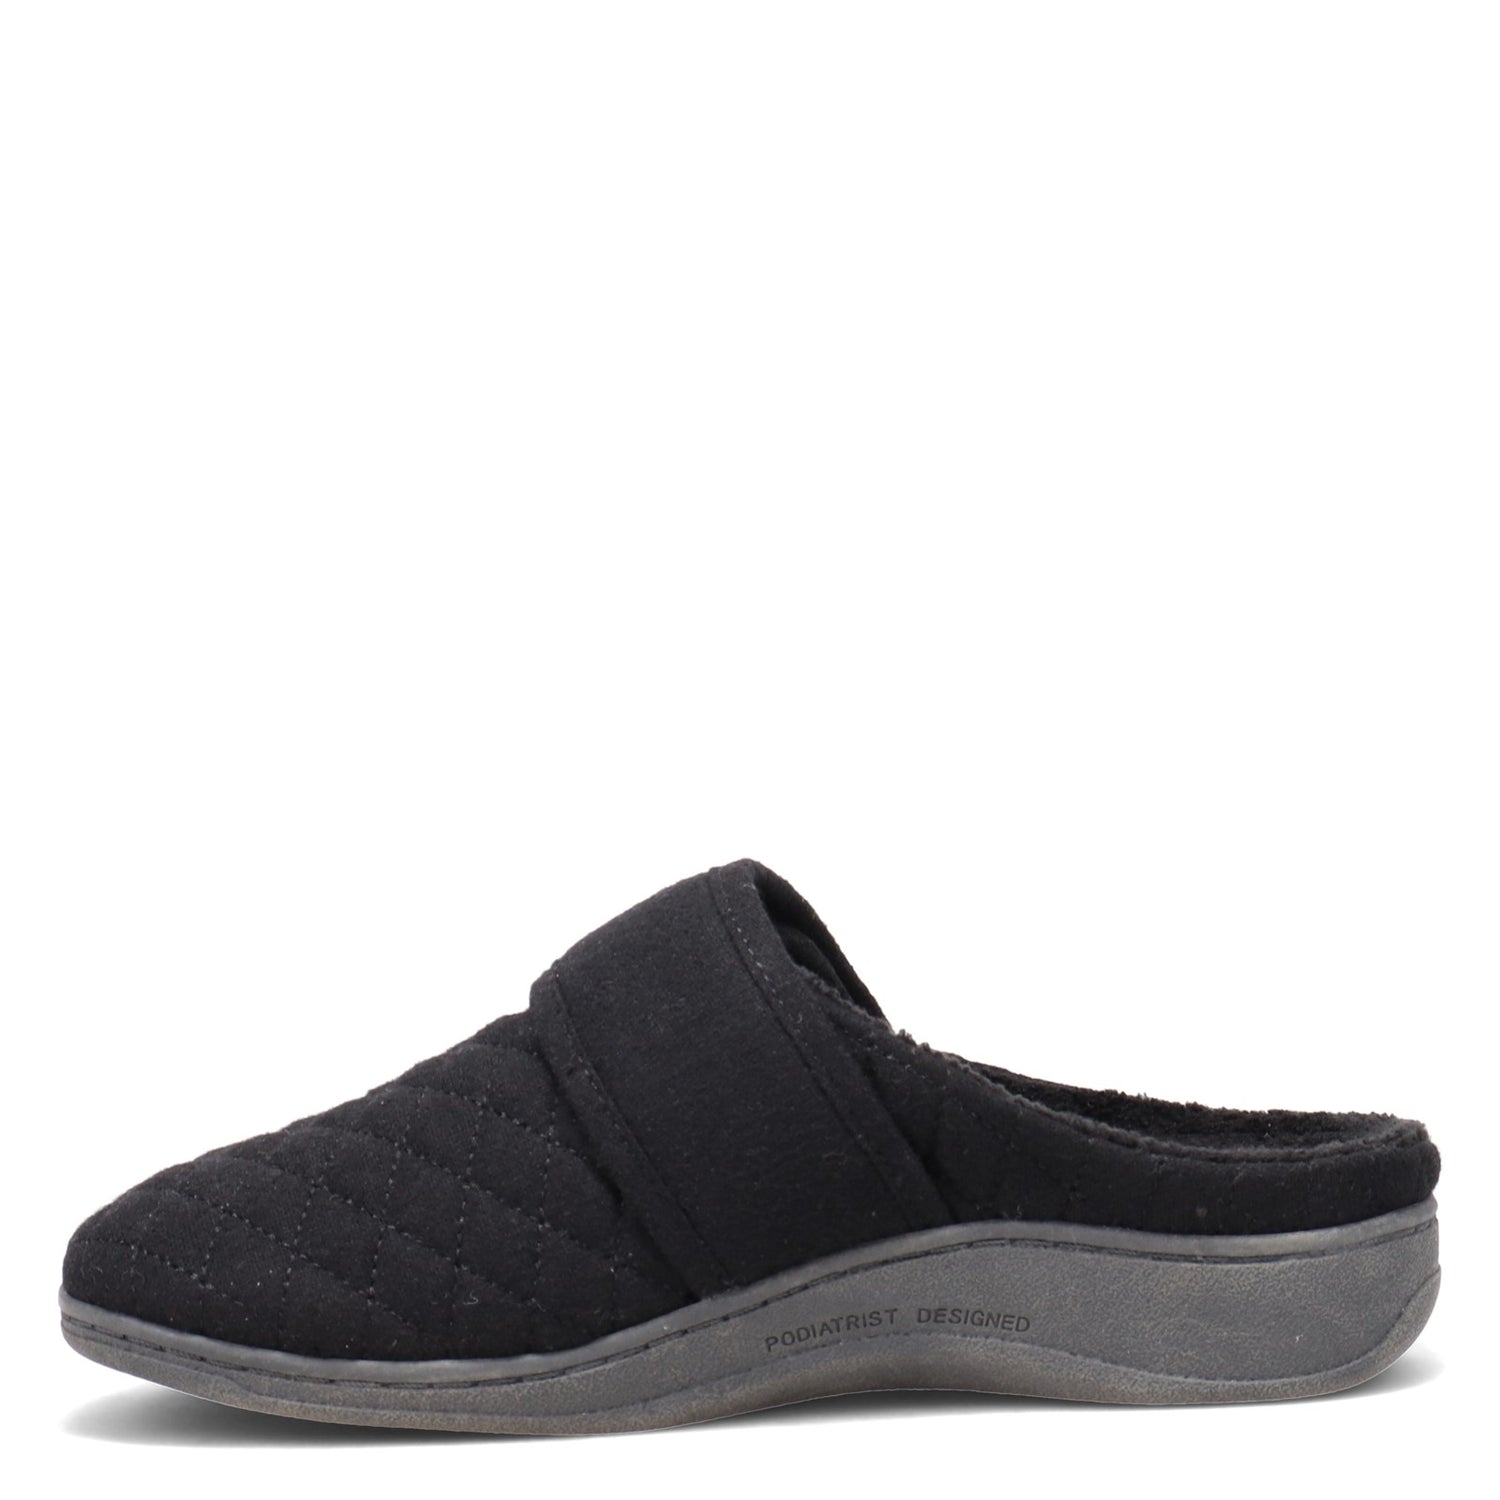 Peltz Shoes  Women's Vionic Carlin Slipper BLACK FLANNEL 10011458-BLK